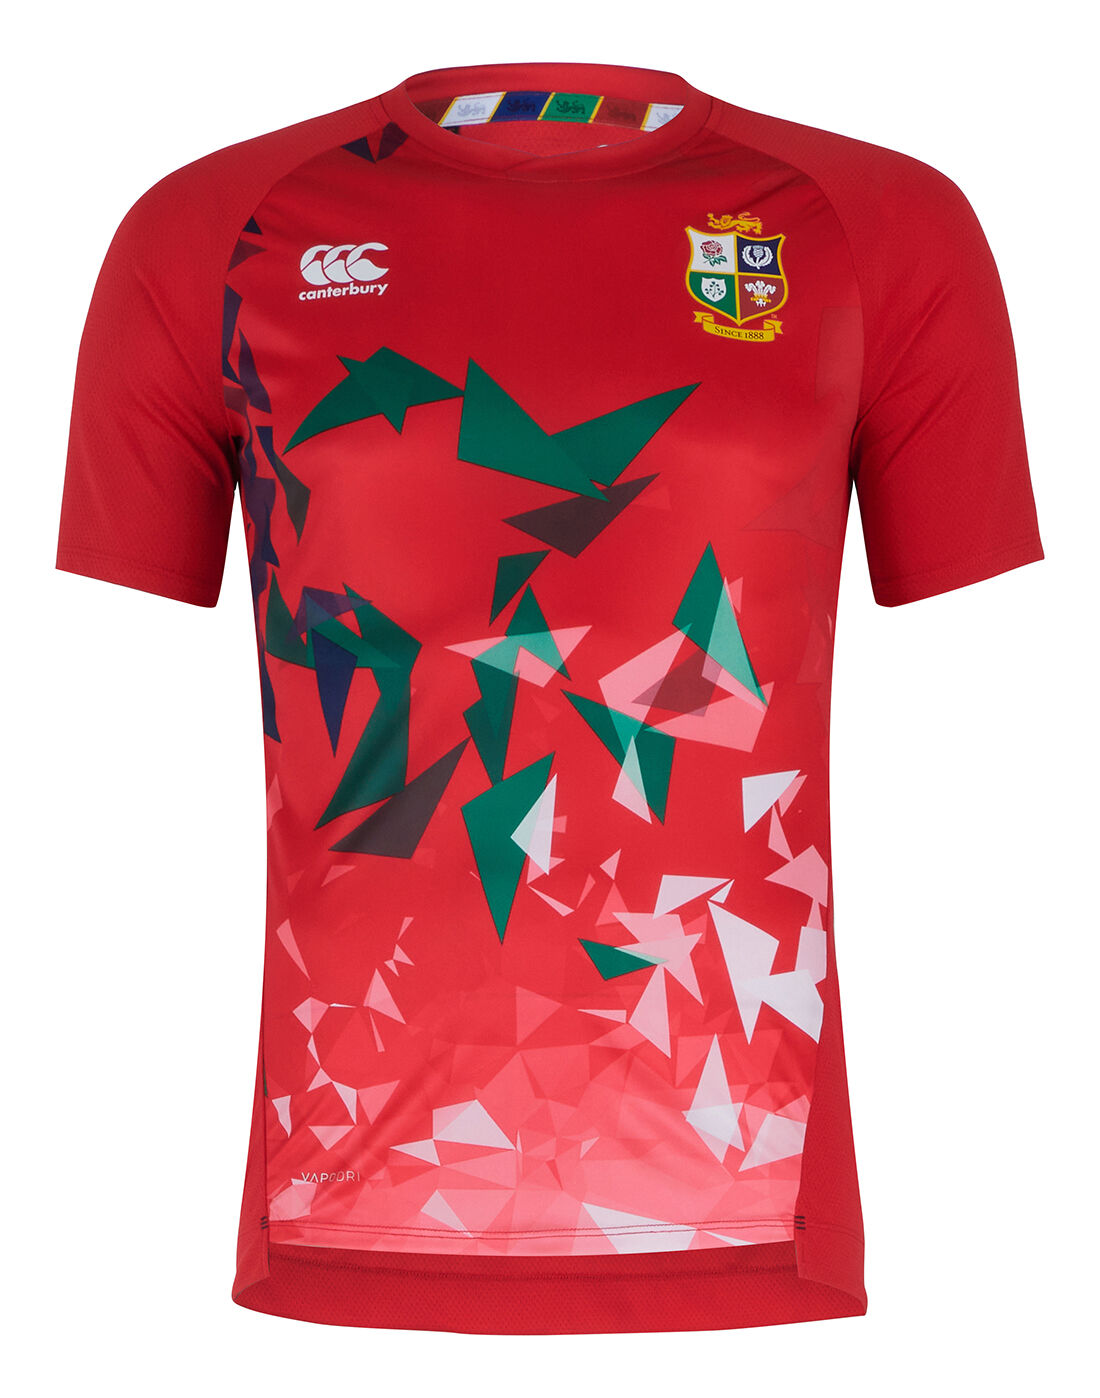 T-Shirt Uomo Canterbury British And Irish Lions Rugby Superlight Graphic